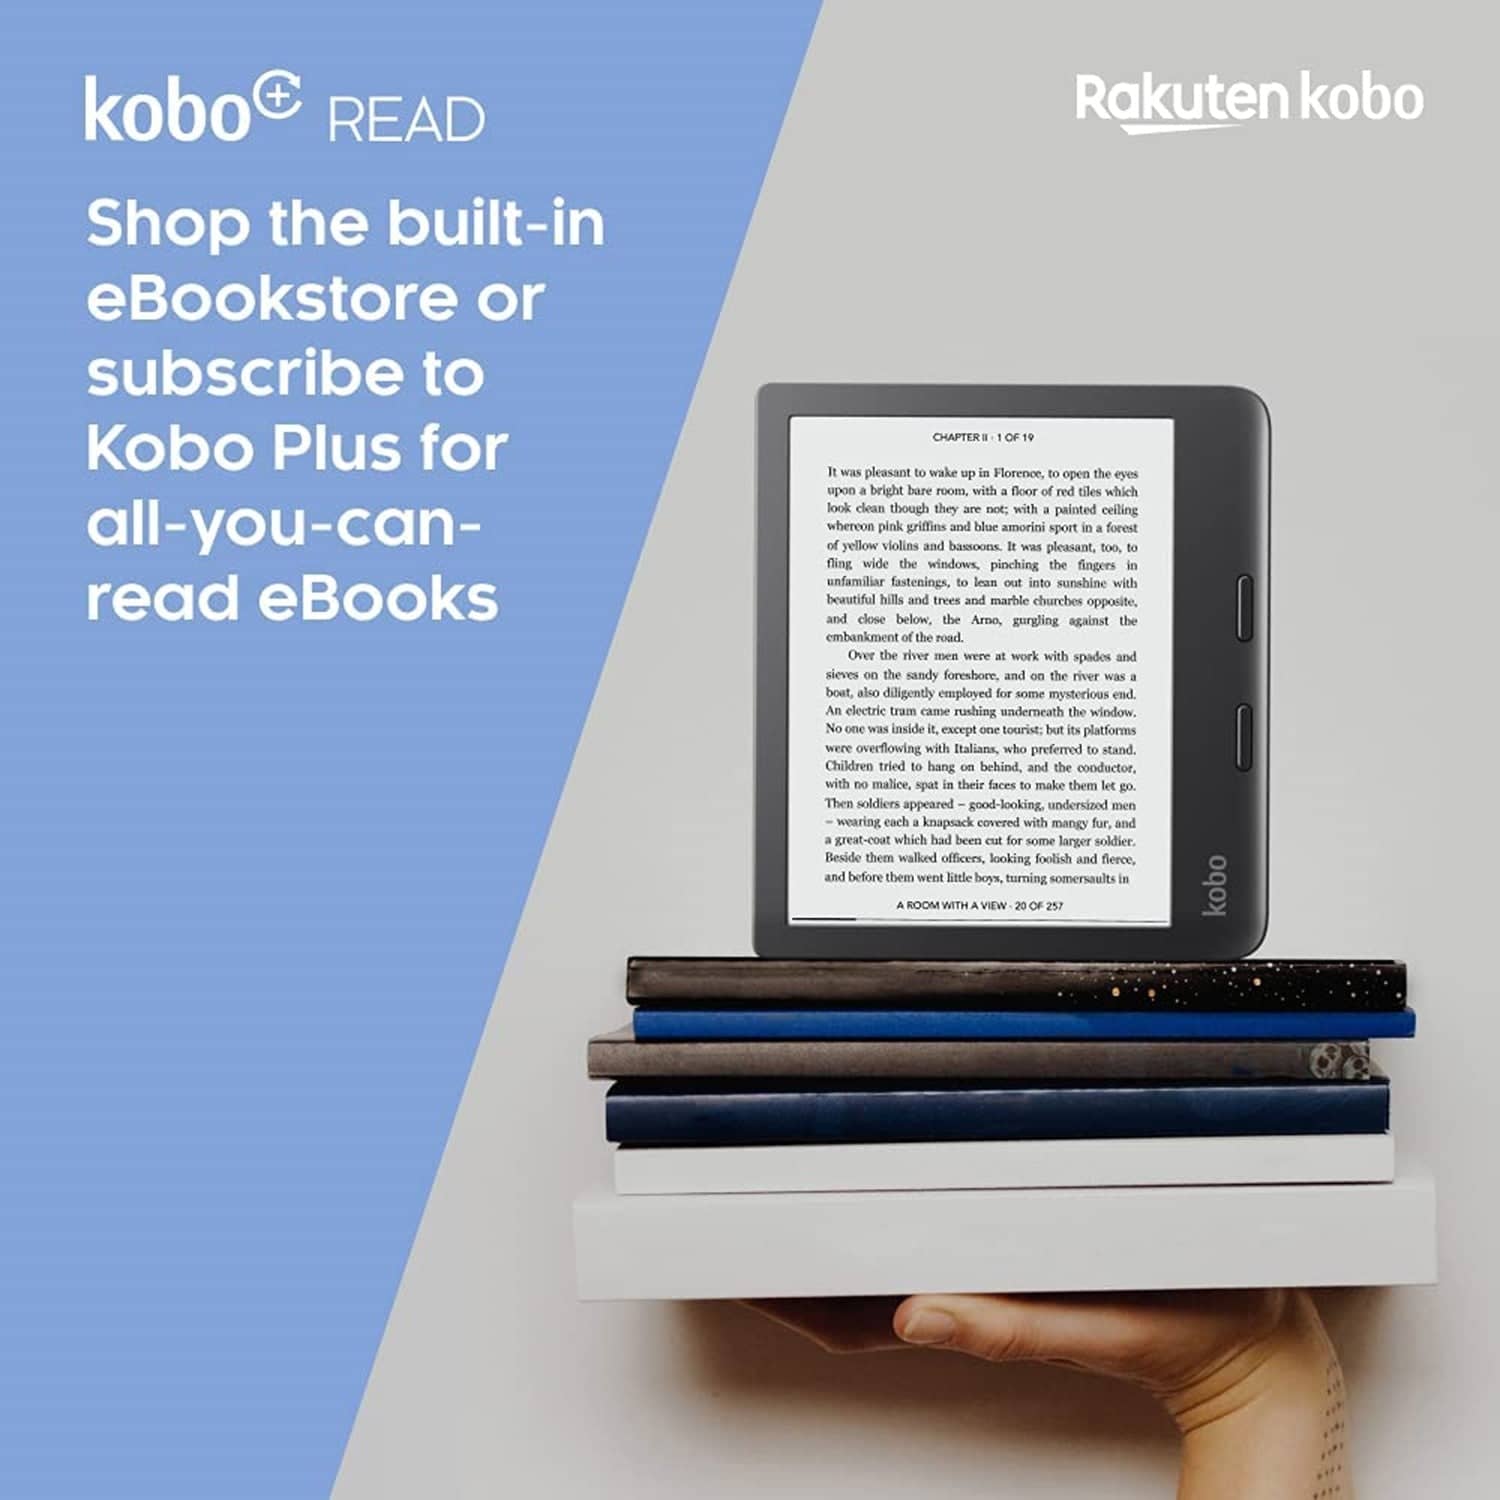 Kobo Libra 2 E-Reader